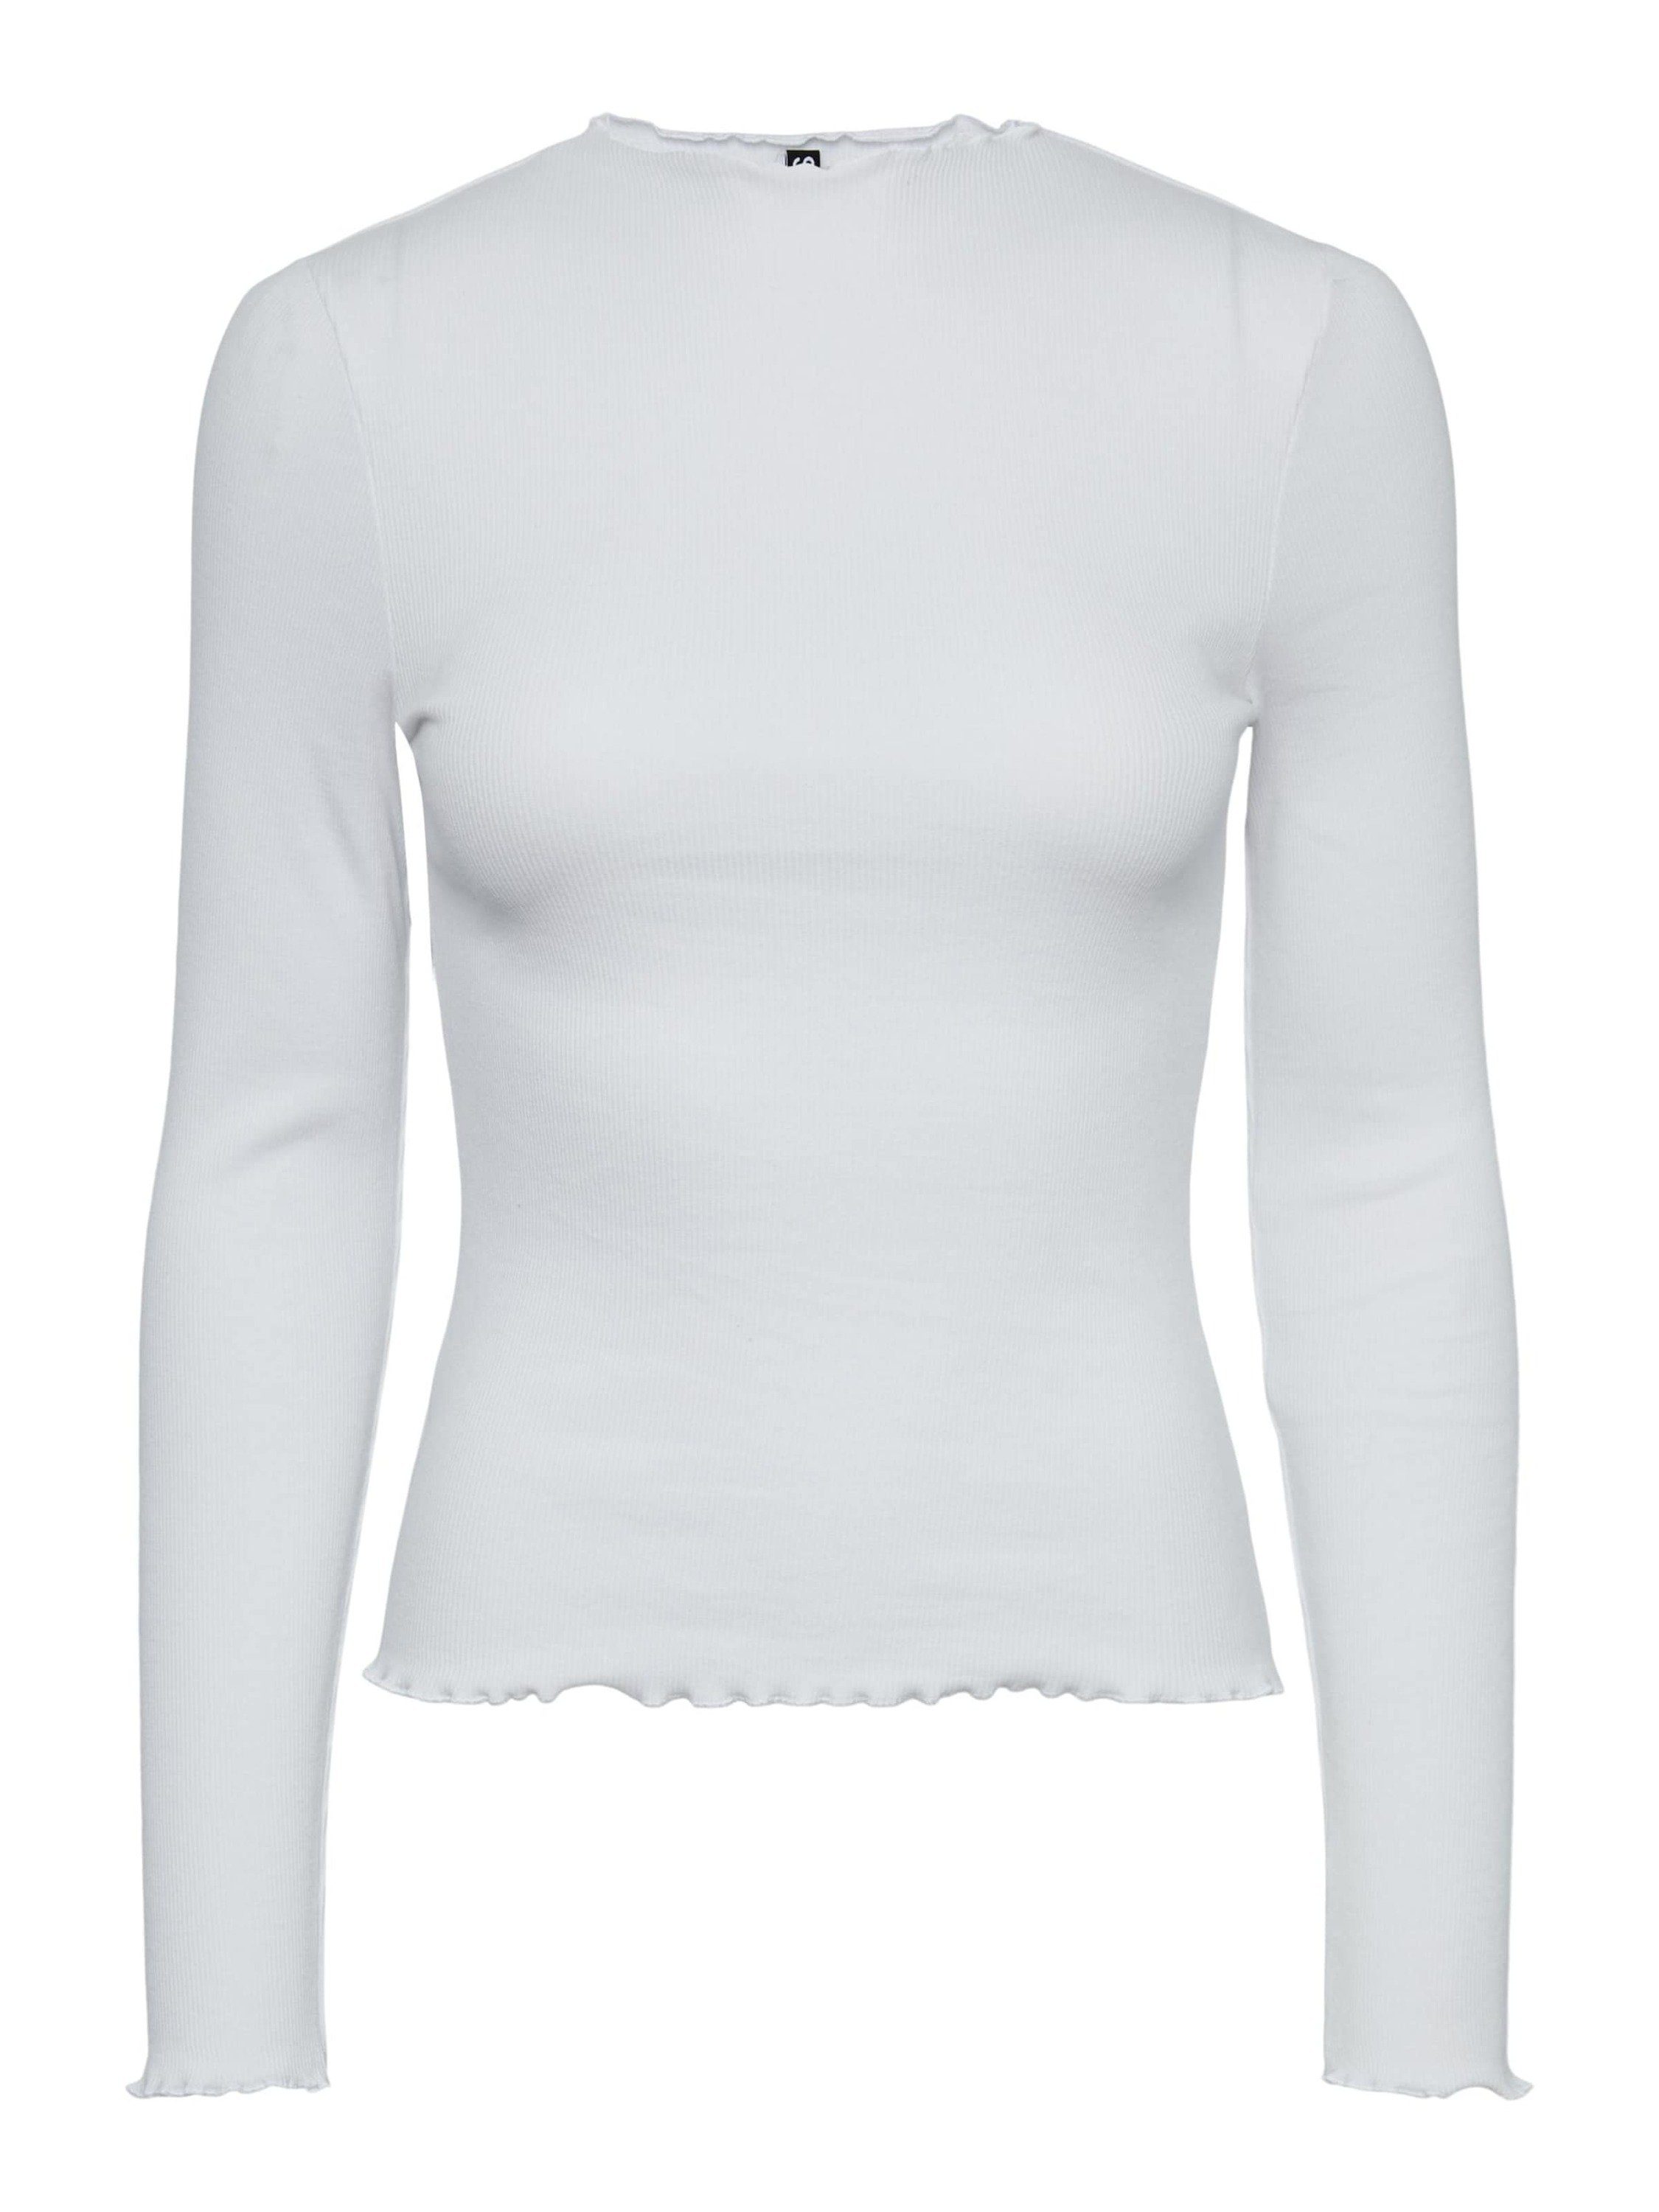 Pieces Langarmshirts für Damen kaufen | OTTO online